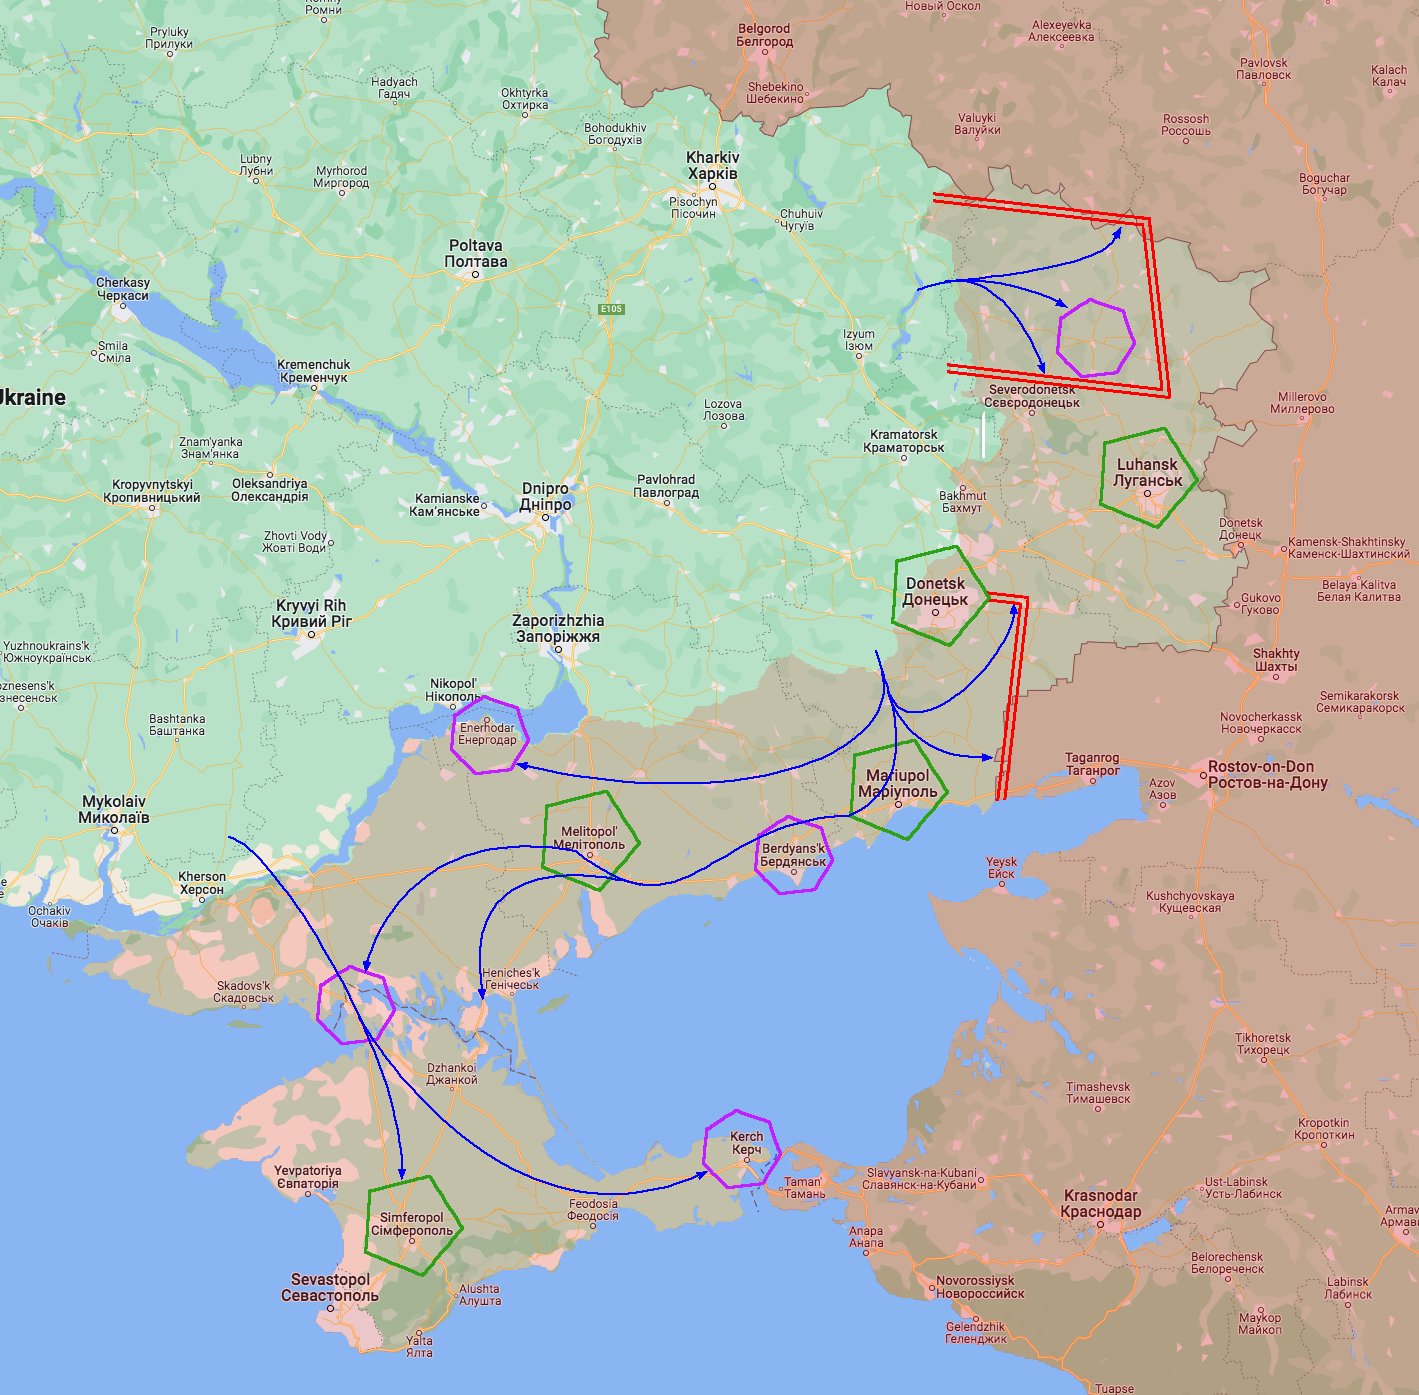 5-ös ábra: Prioritások és kiemelt célpontok az oroszok által megszállt ukrán területeken. 